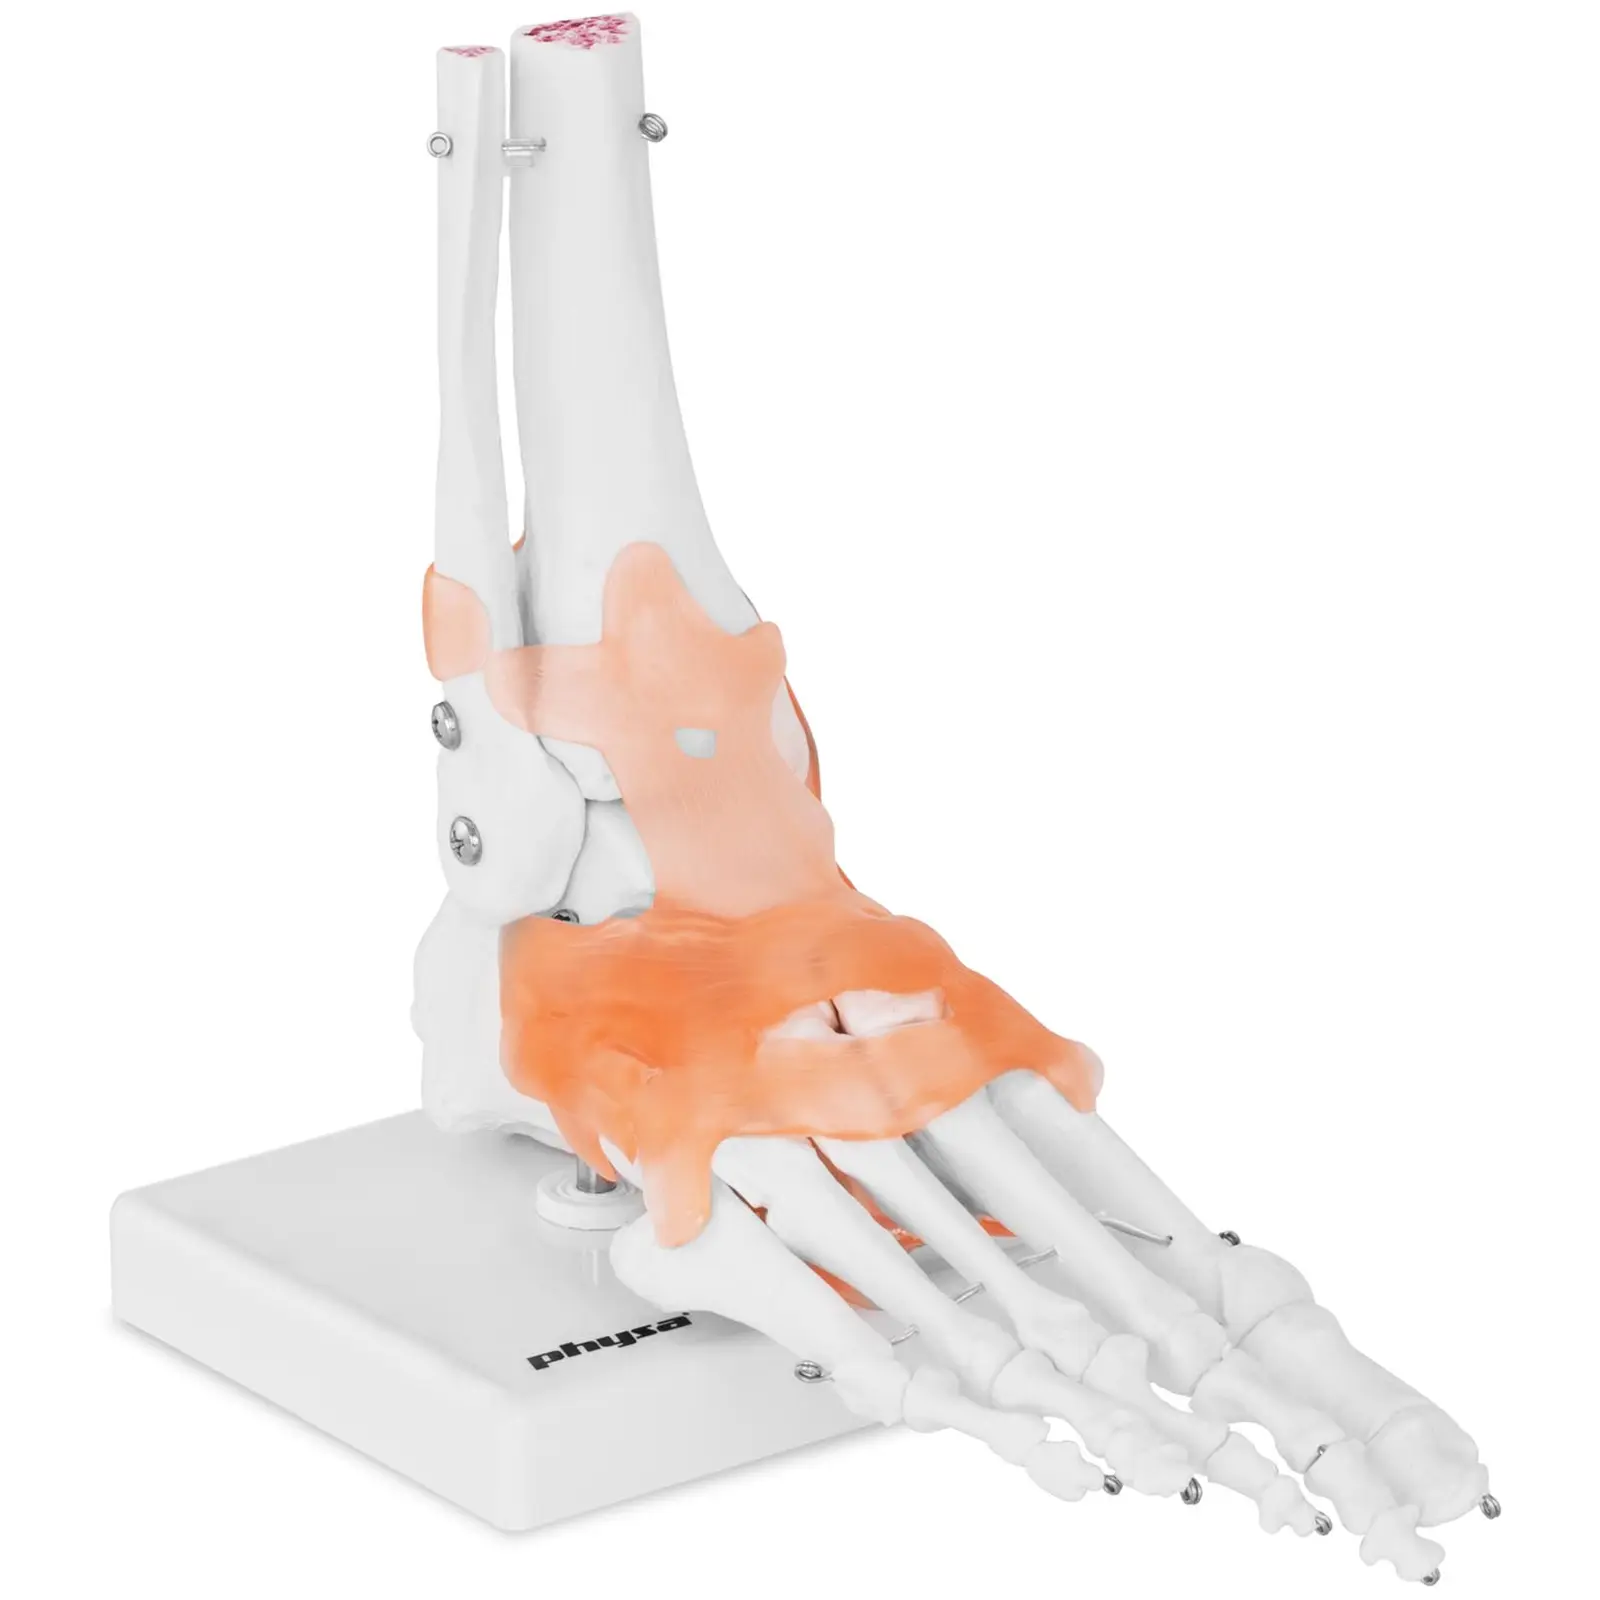 Lábfej csontváz és funkcionális lábfej modell | physa